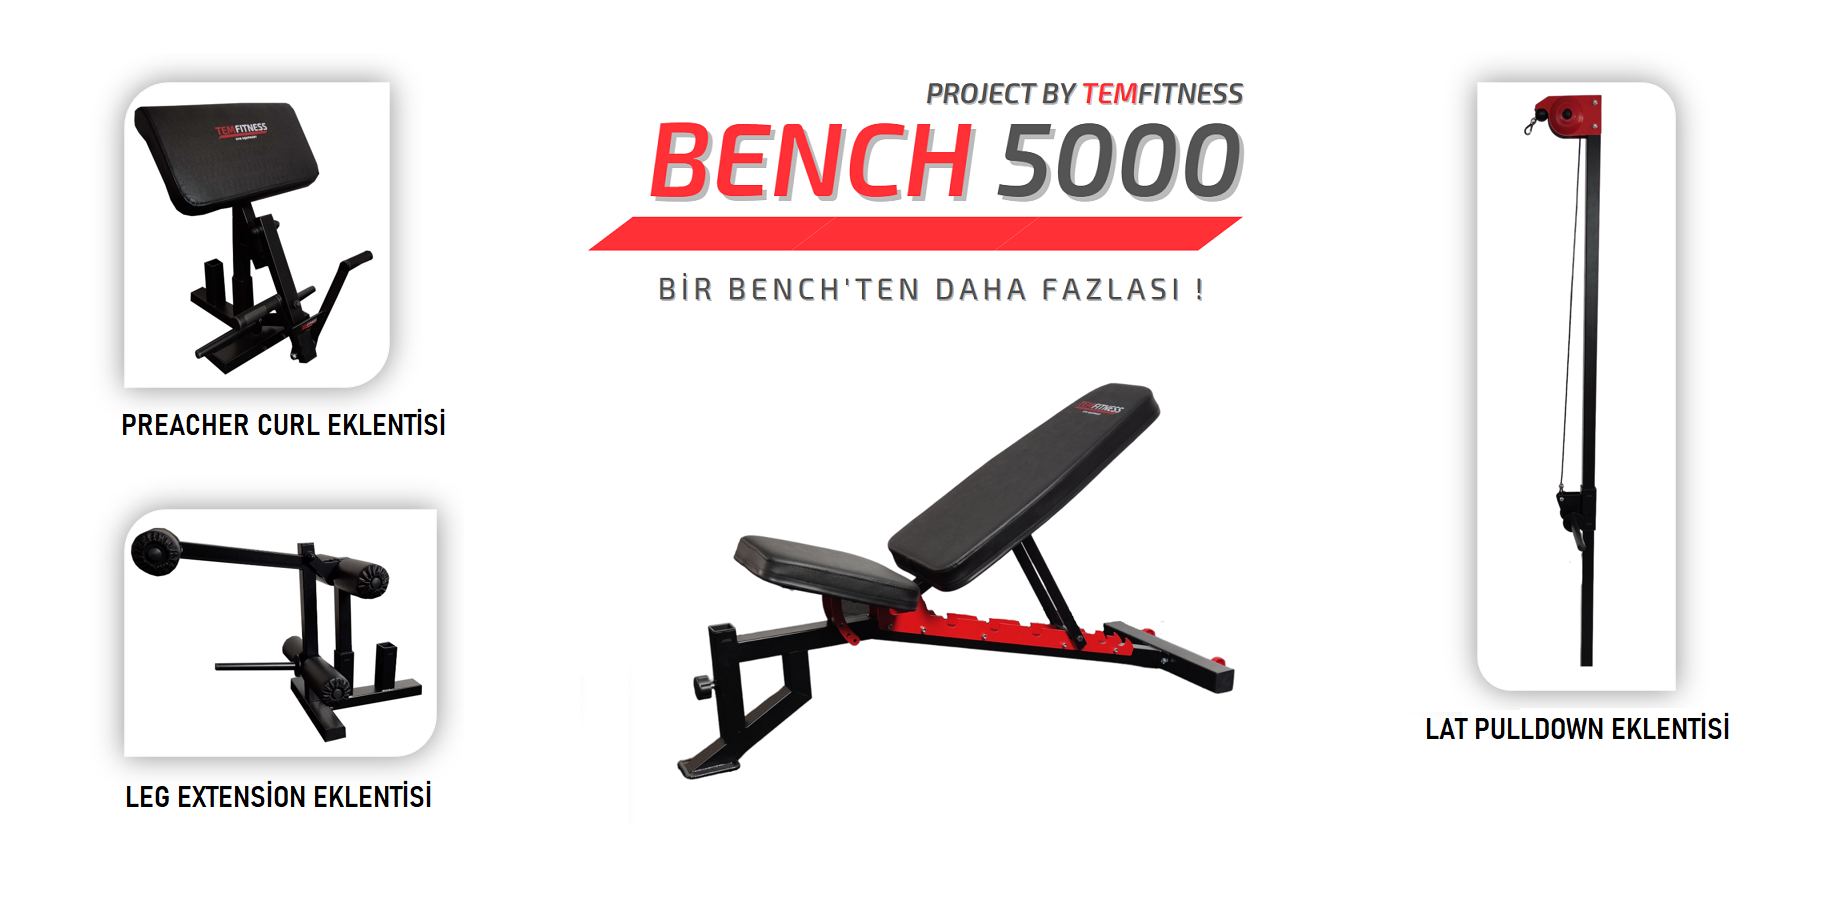 BENCH 5000